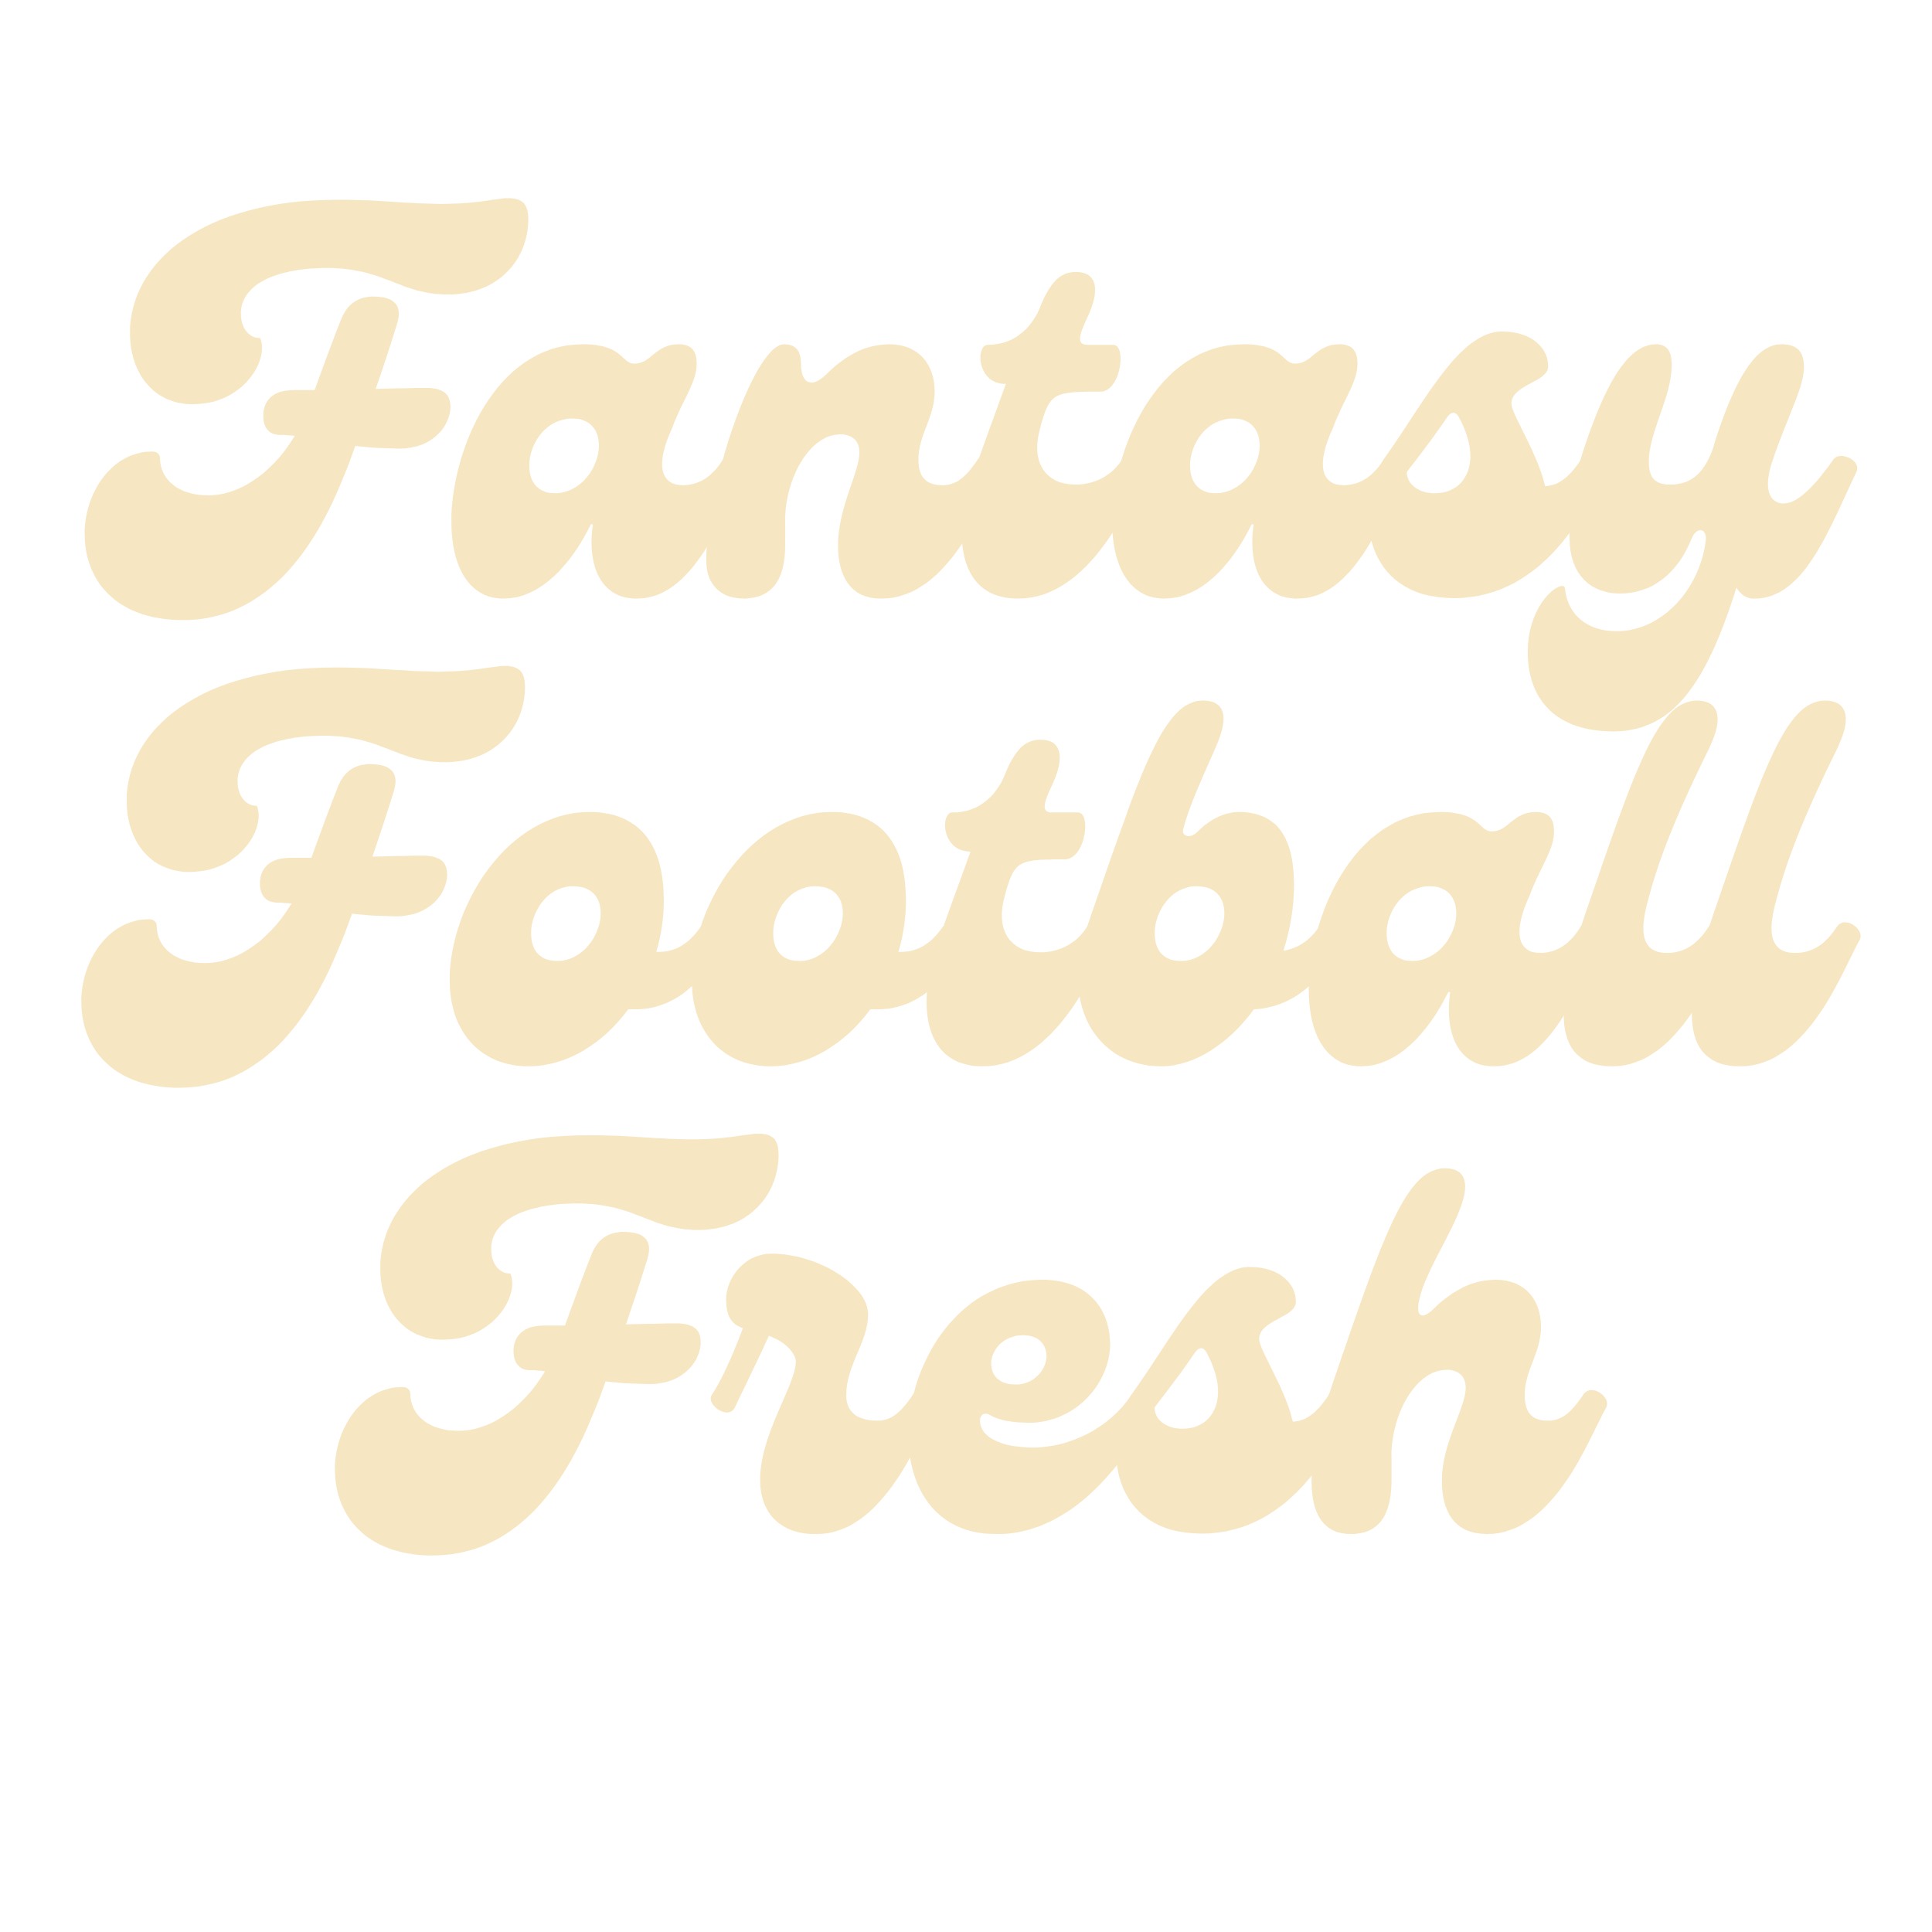 FantasyFootballFresh